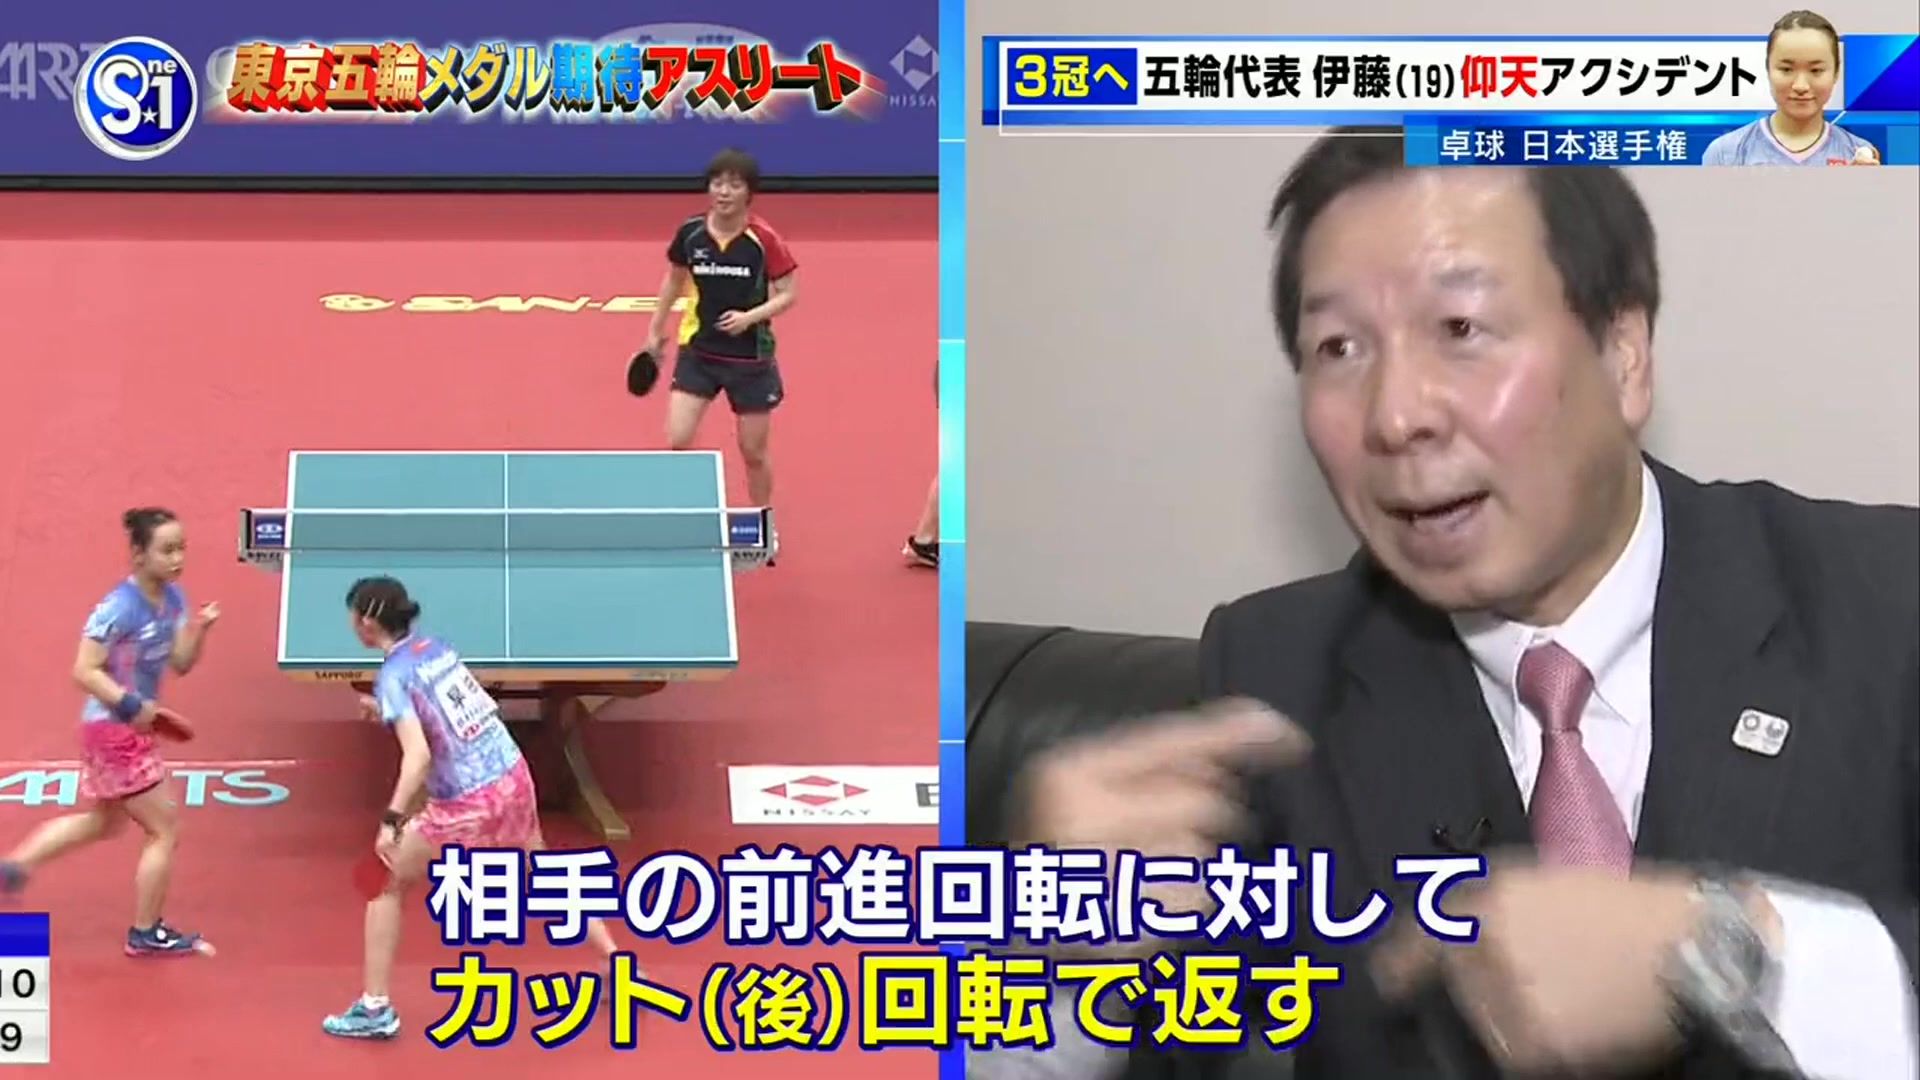 賽後採訪 分析 全日本卓球選手權雙打決賽日 宮崎義仁 平野早矢香特別解說 哔哩哔哩 つロ干杯 Bilibili